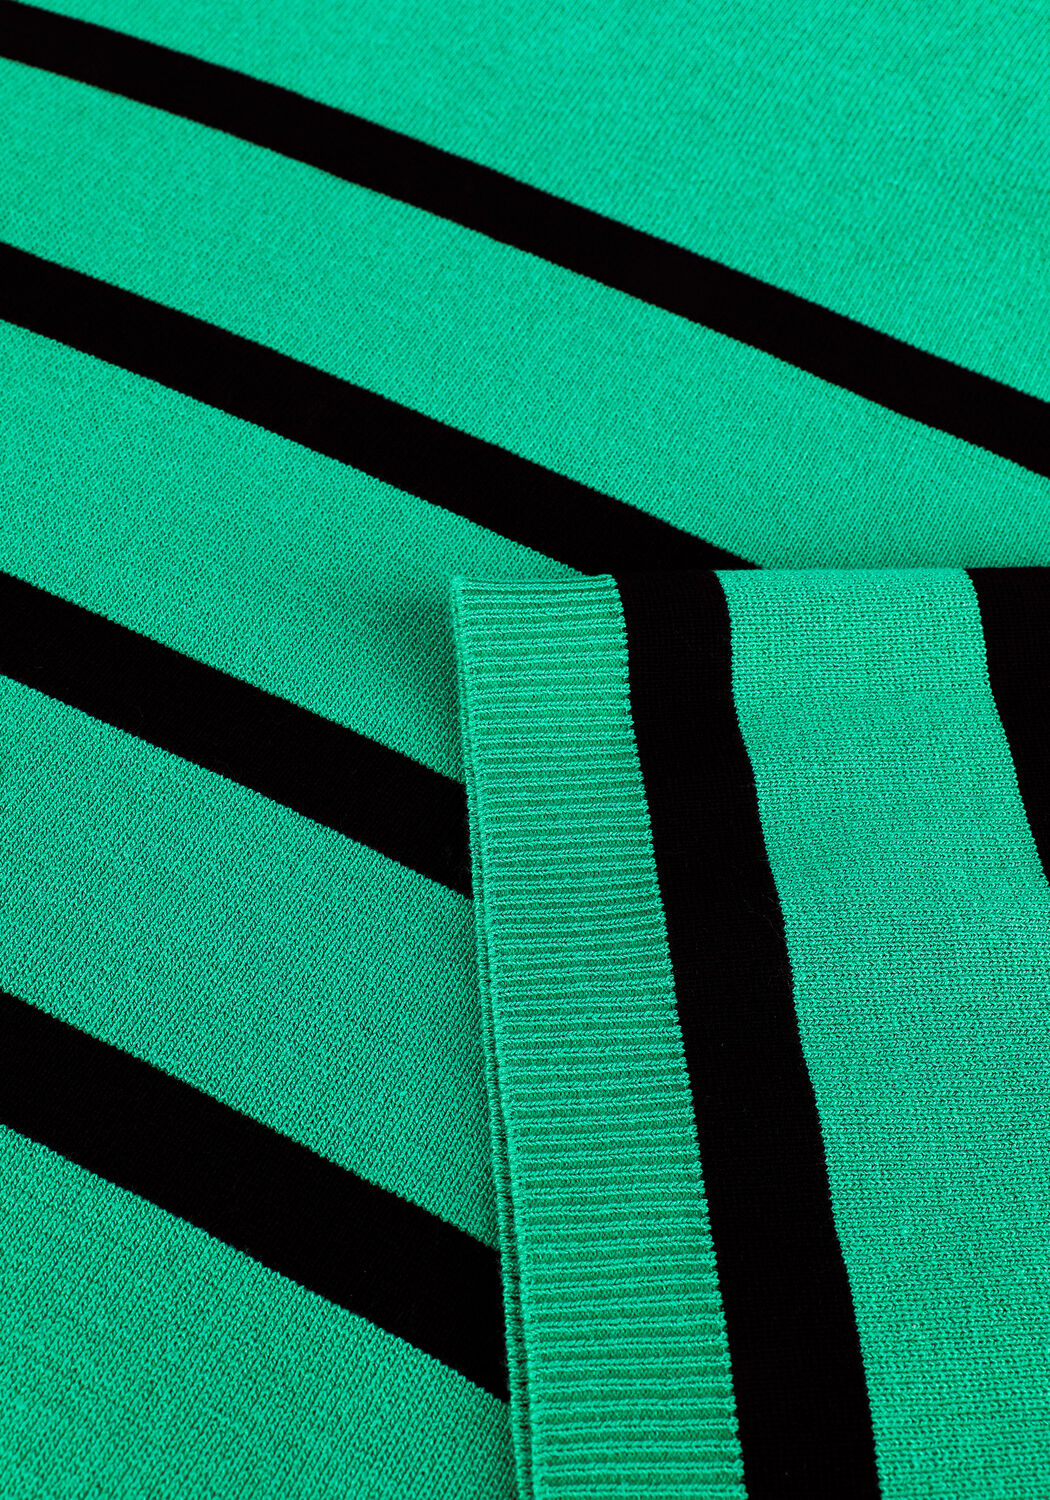 Pull Ena Stripe Knit Blouse Neo Noir en coloris Vert Femme Vêtements Sweats et pull overs Pulls à col roulé 